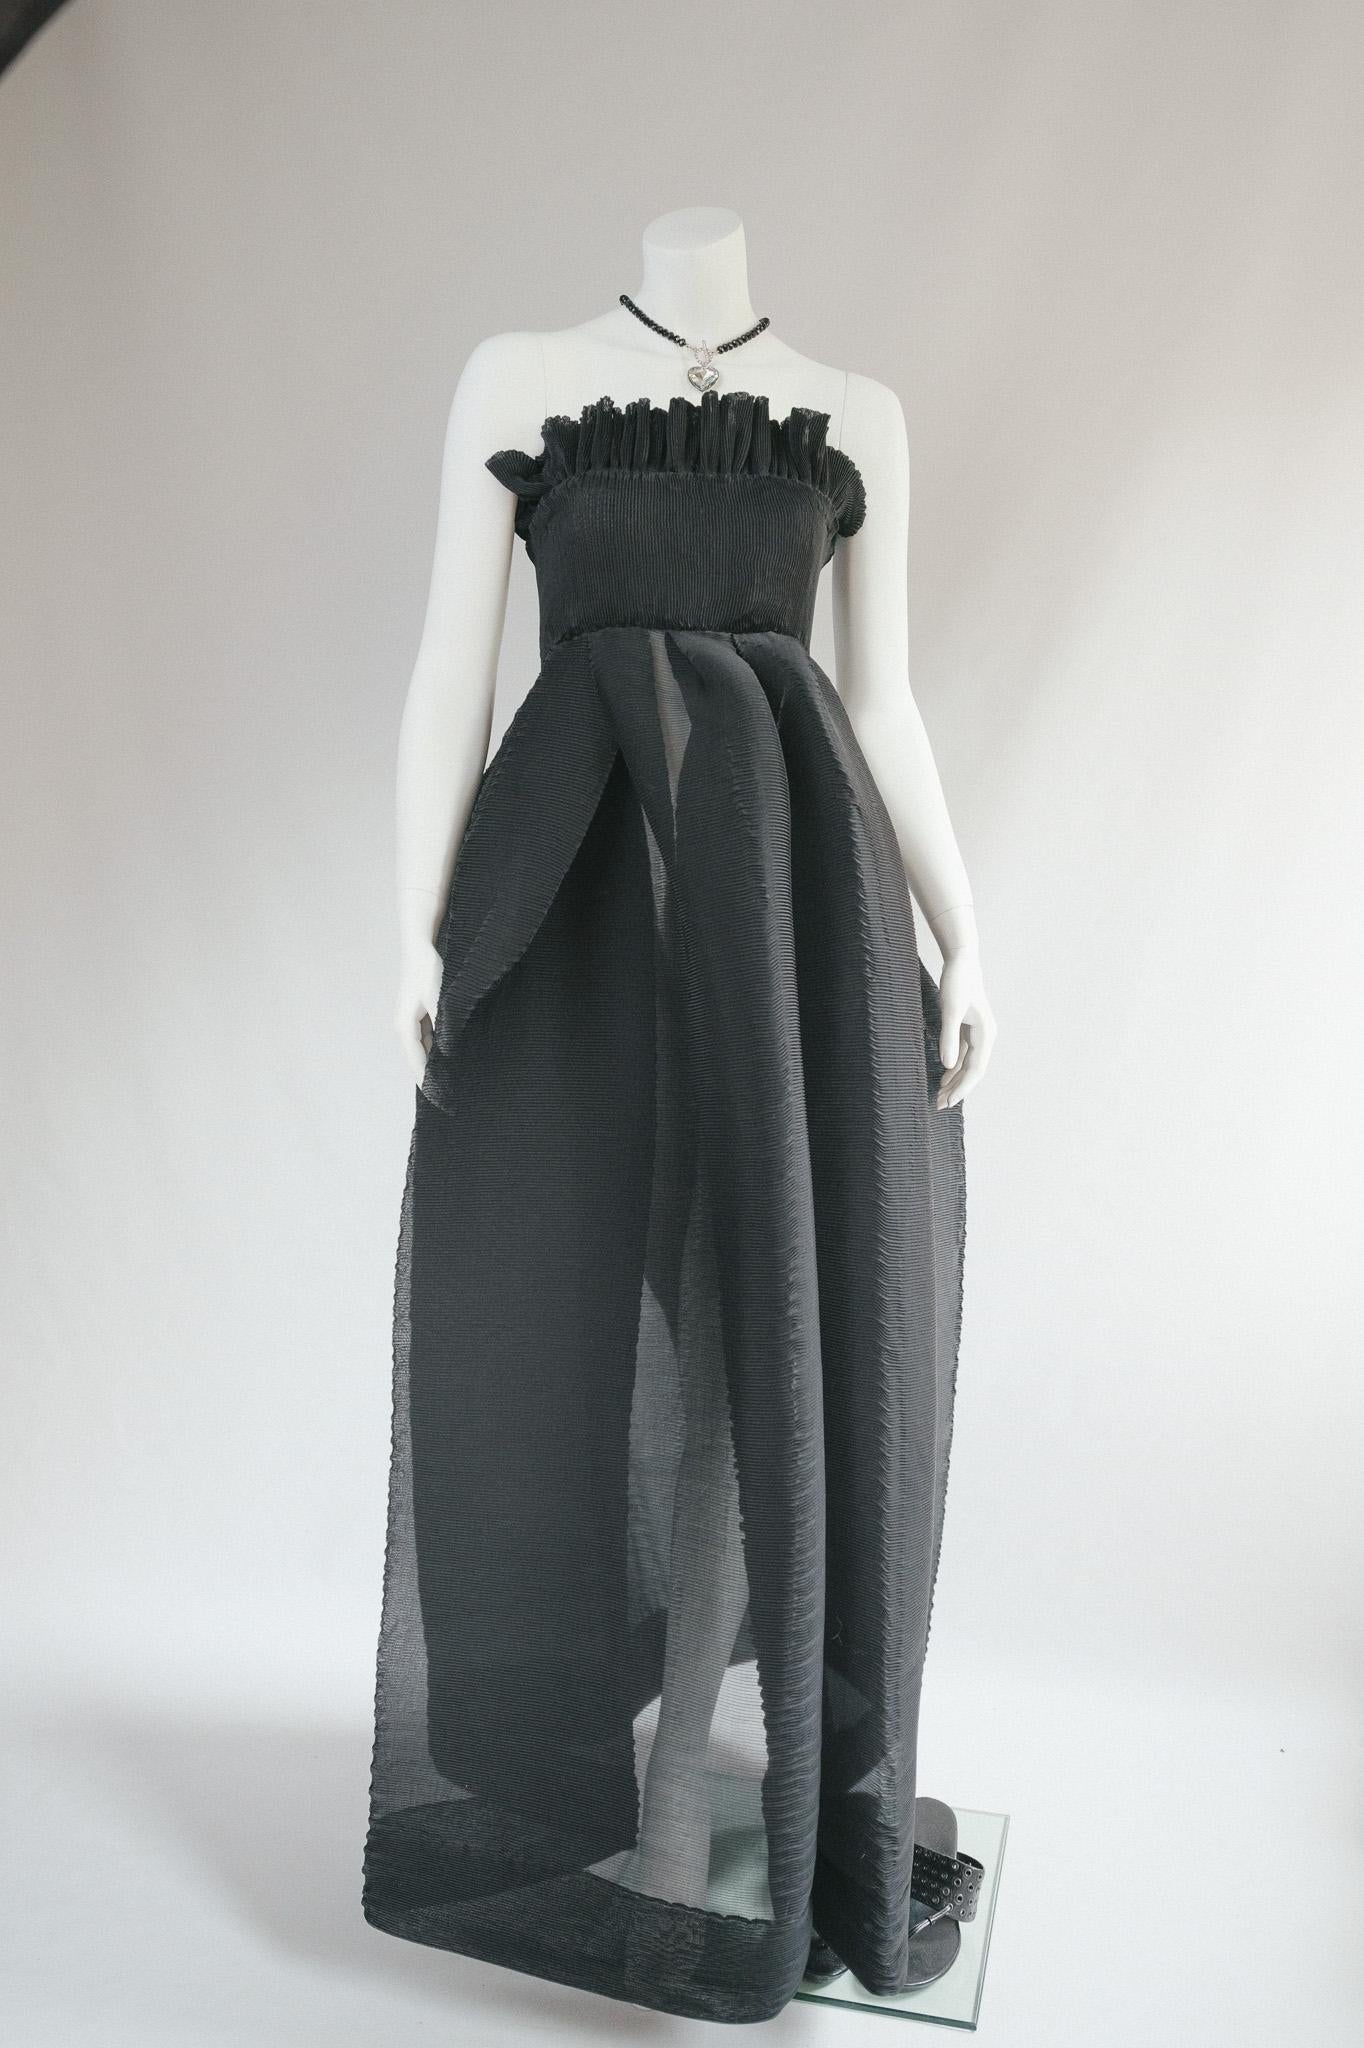 Archival Couture Anfang 1988 Romeo Gigli plissiertes Pliss-Kleid
Verrücktes schwarzes, plissiertes, halbdurchsichtiges Origami-Kleid
Tailliertes Oberteil mit Rüschenknopf und Rüschendetail
Extravaganter halbdurchsichtiger Origamirock mit